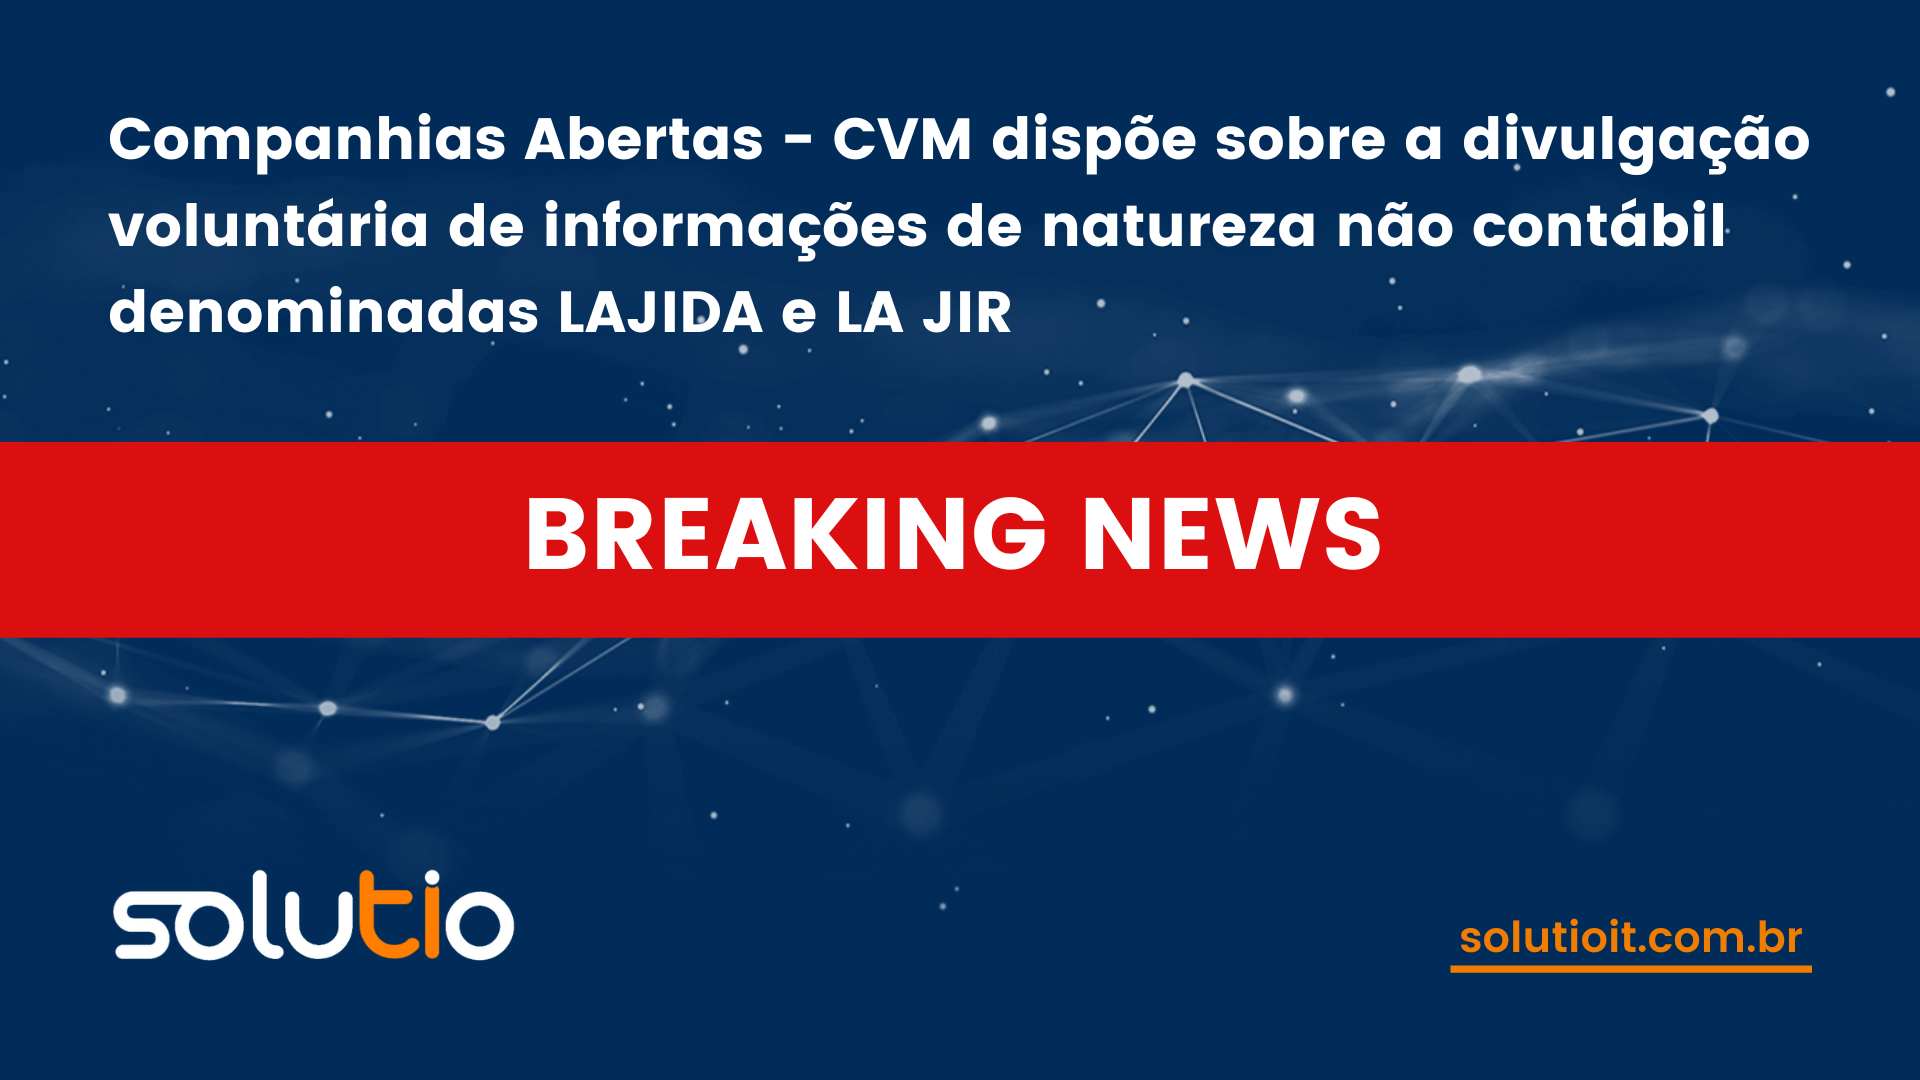 Companhias Abertas - CVM dispõe sobre a divulgação voluntária de informações de natureza não contábil denominadas LAJIDA e LA JIR